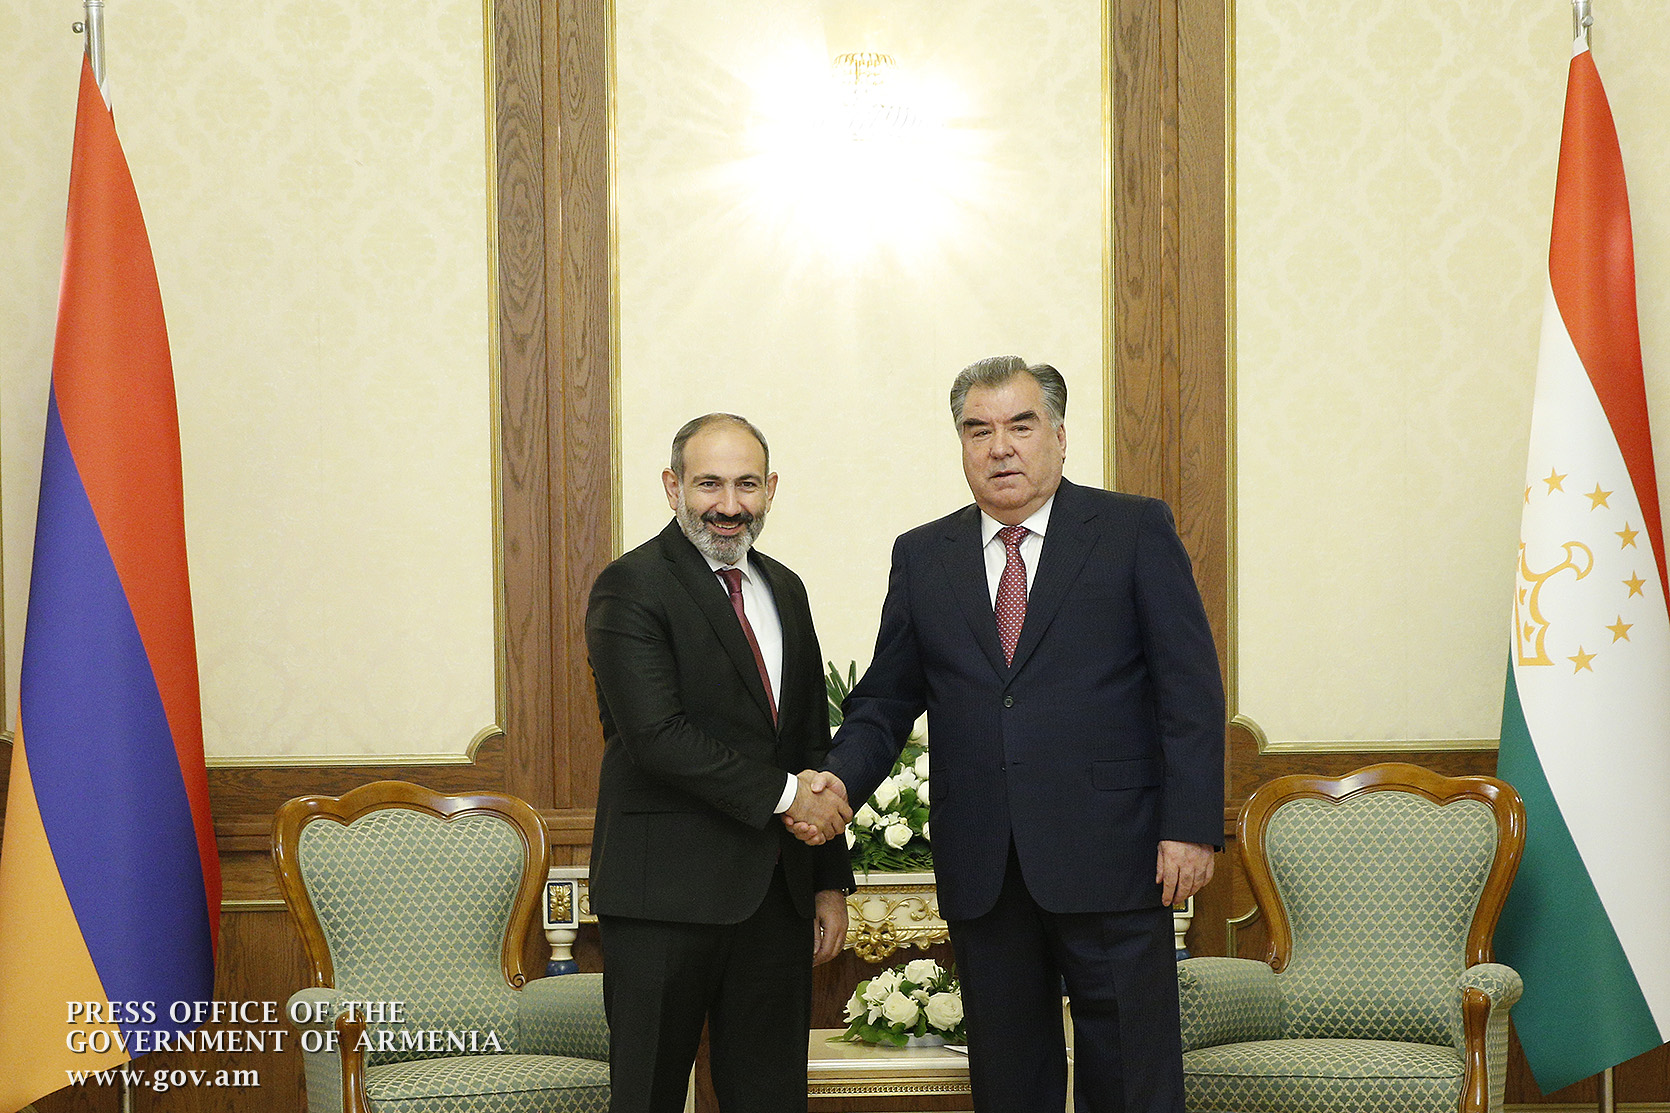 В Душанбе прошла встреча Никола Пашиняна и Эмомали Рахмона